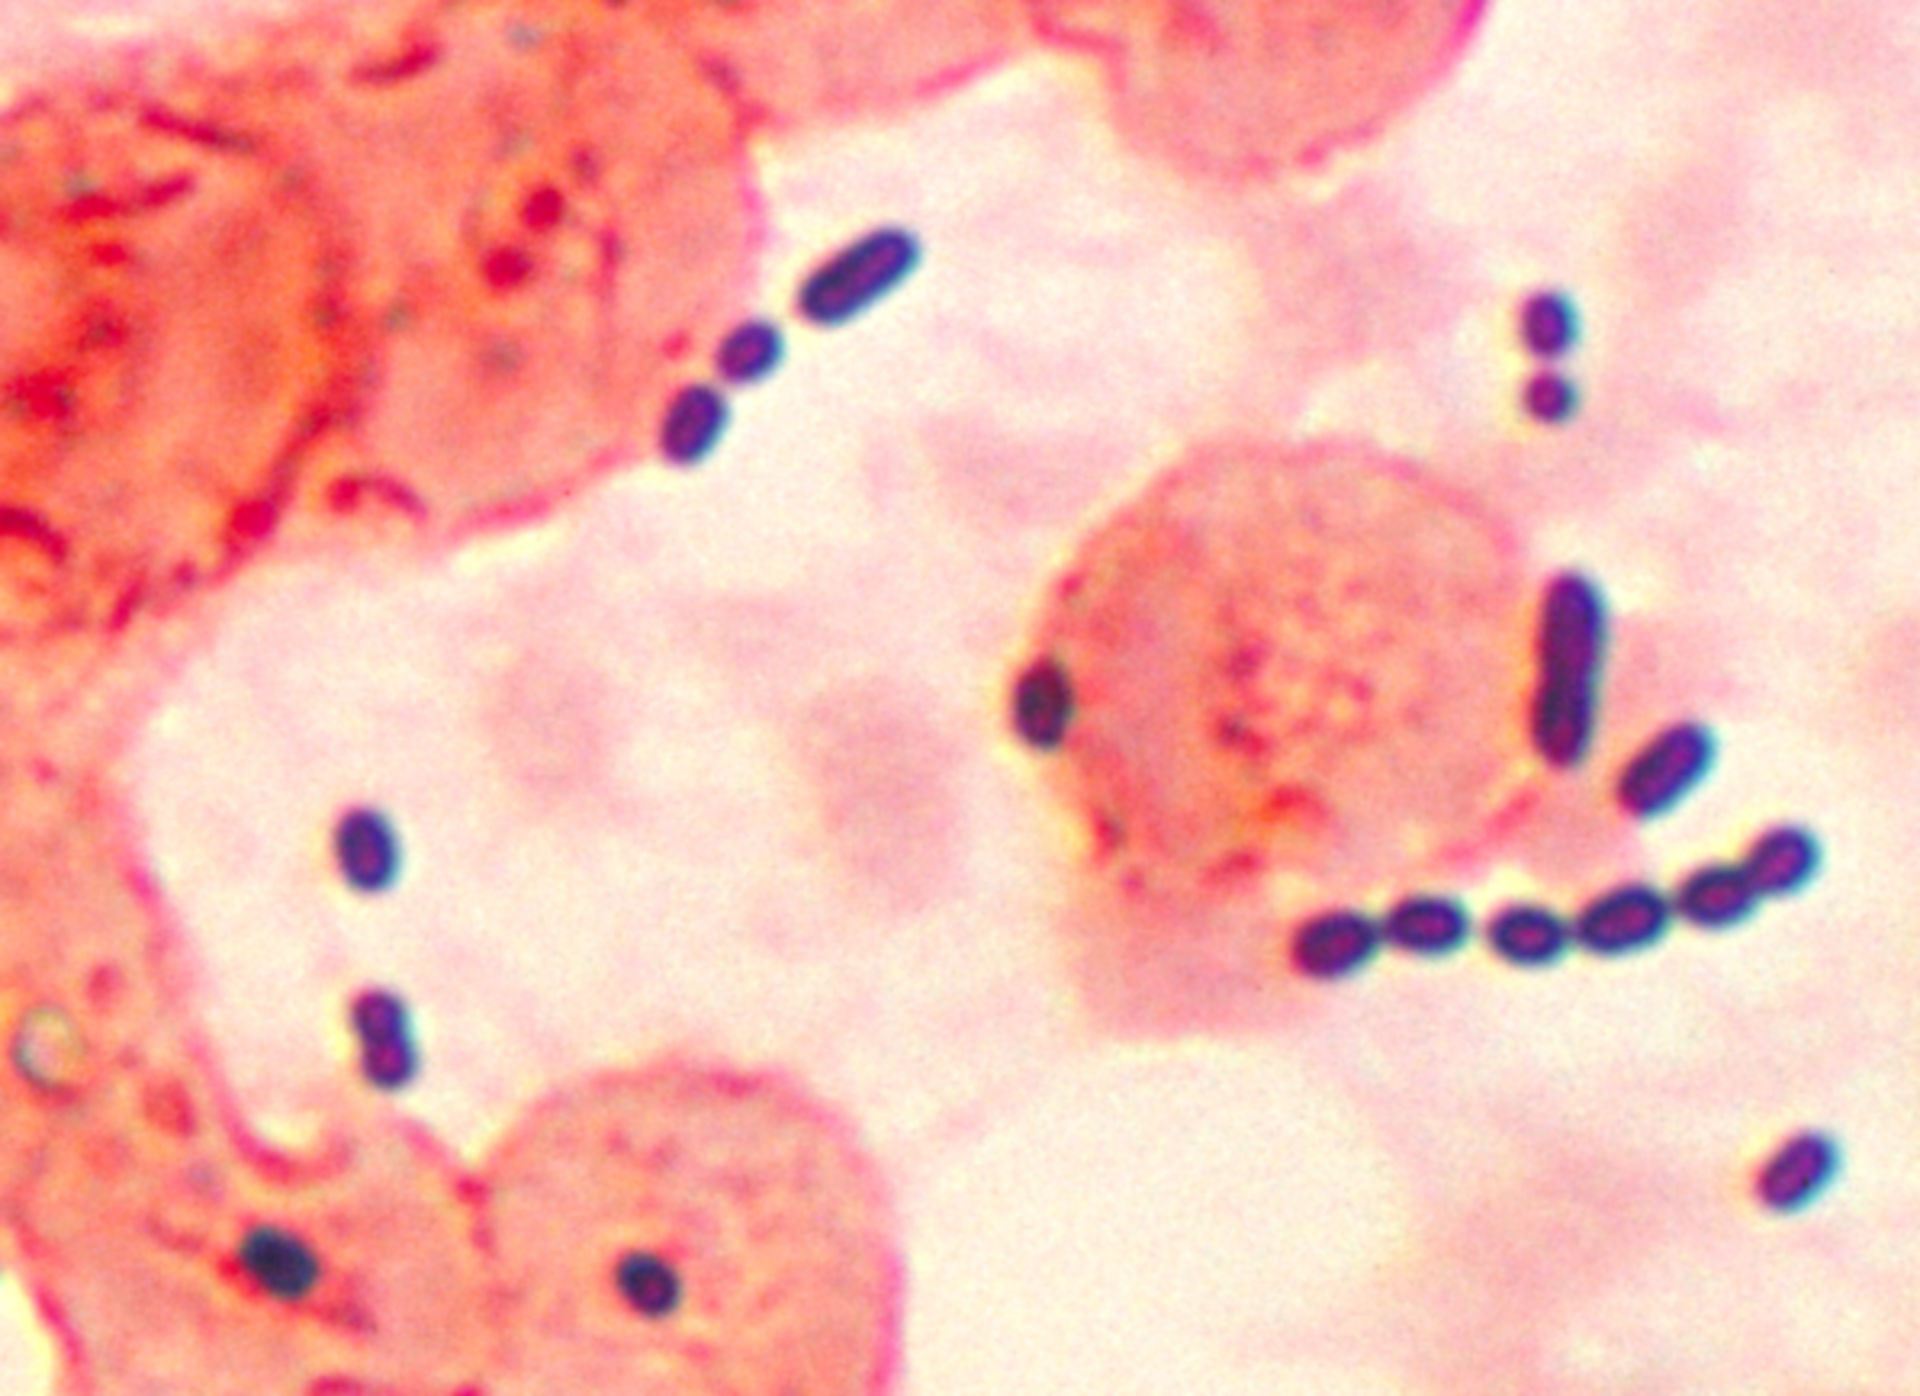 Enterococcus (Gramfärbung)